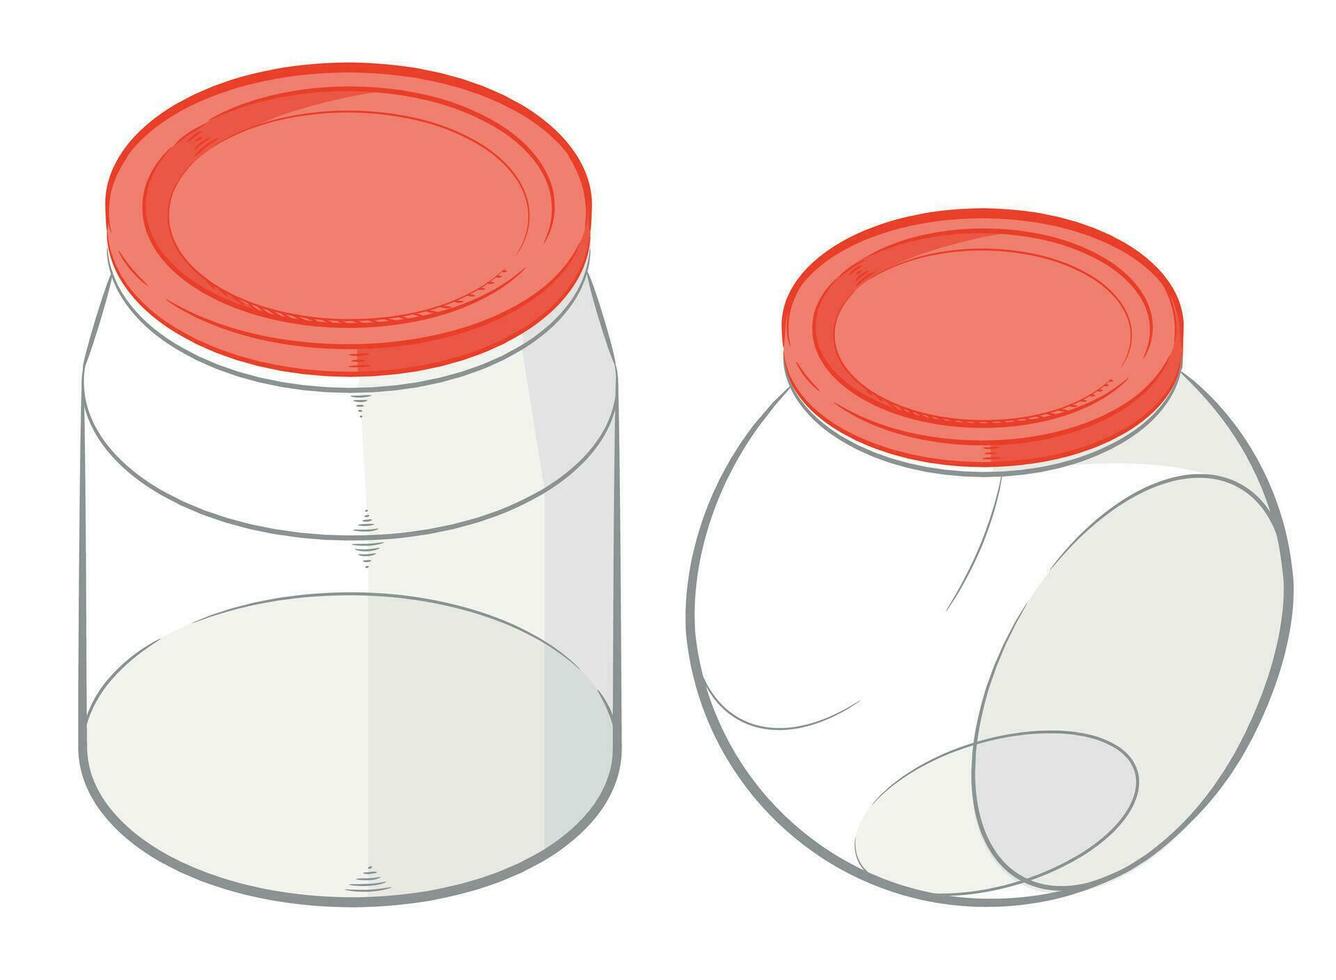 voedsel plastic doos tussendoortje opslagruimte pak vector